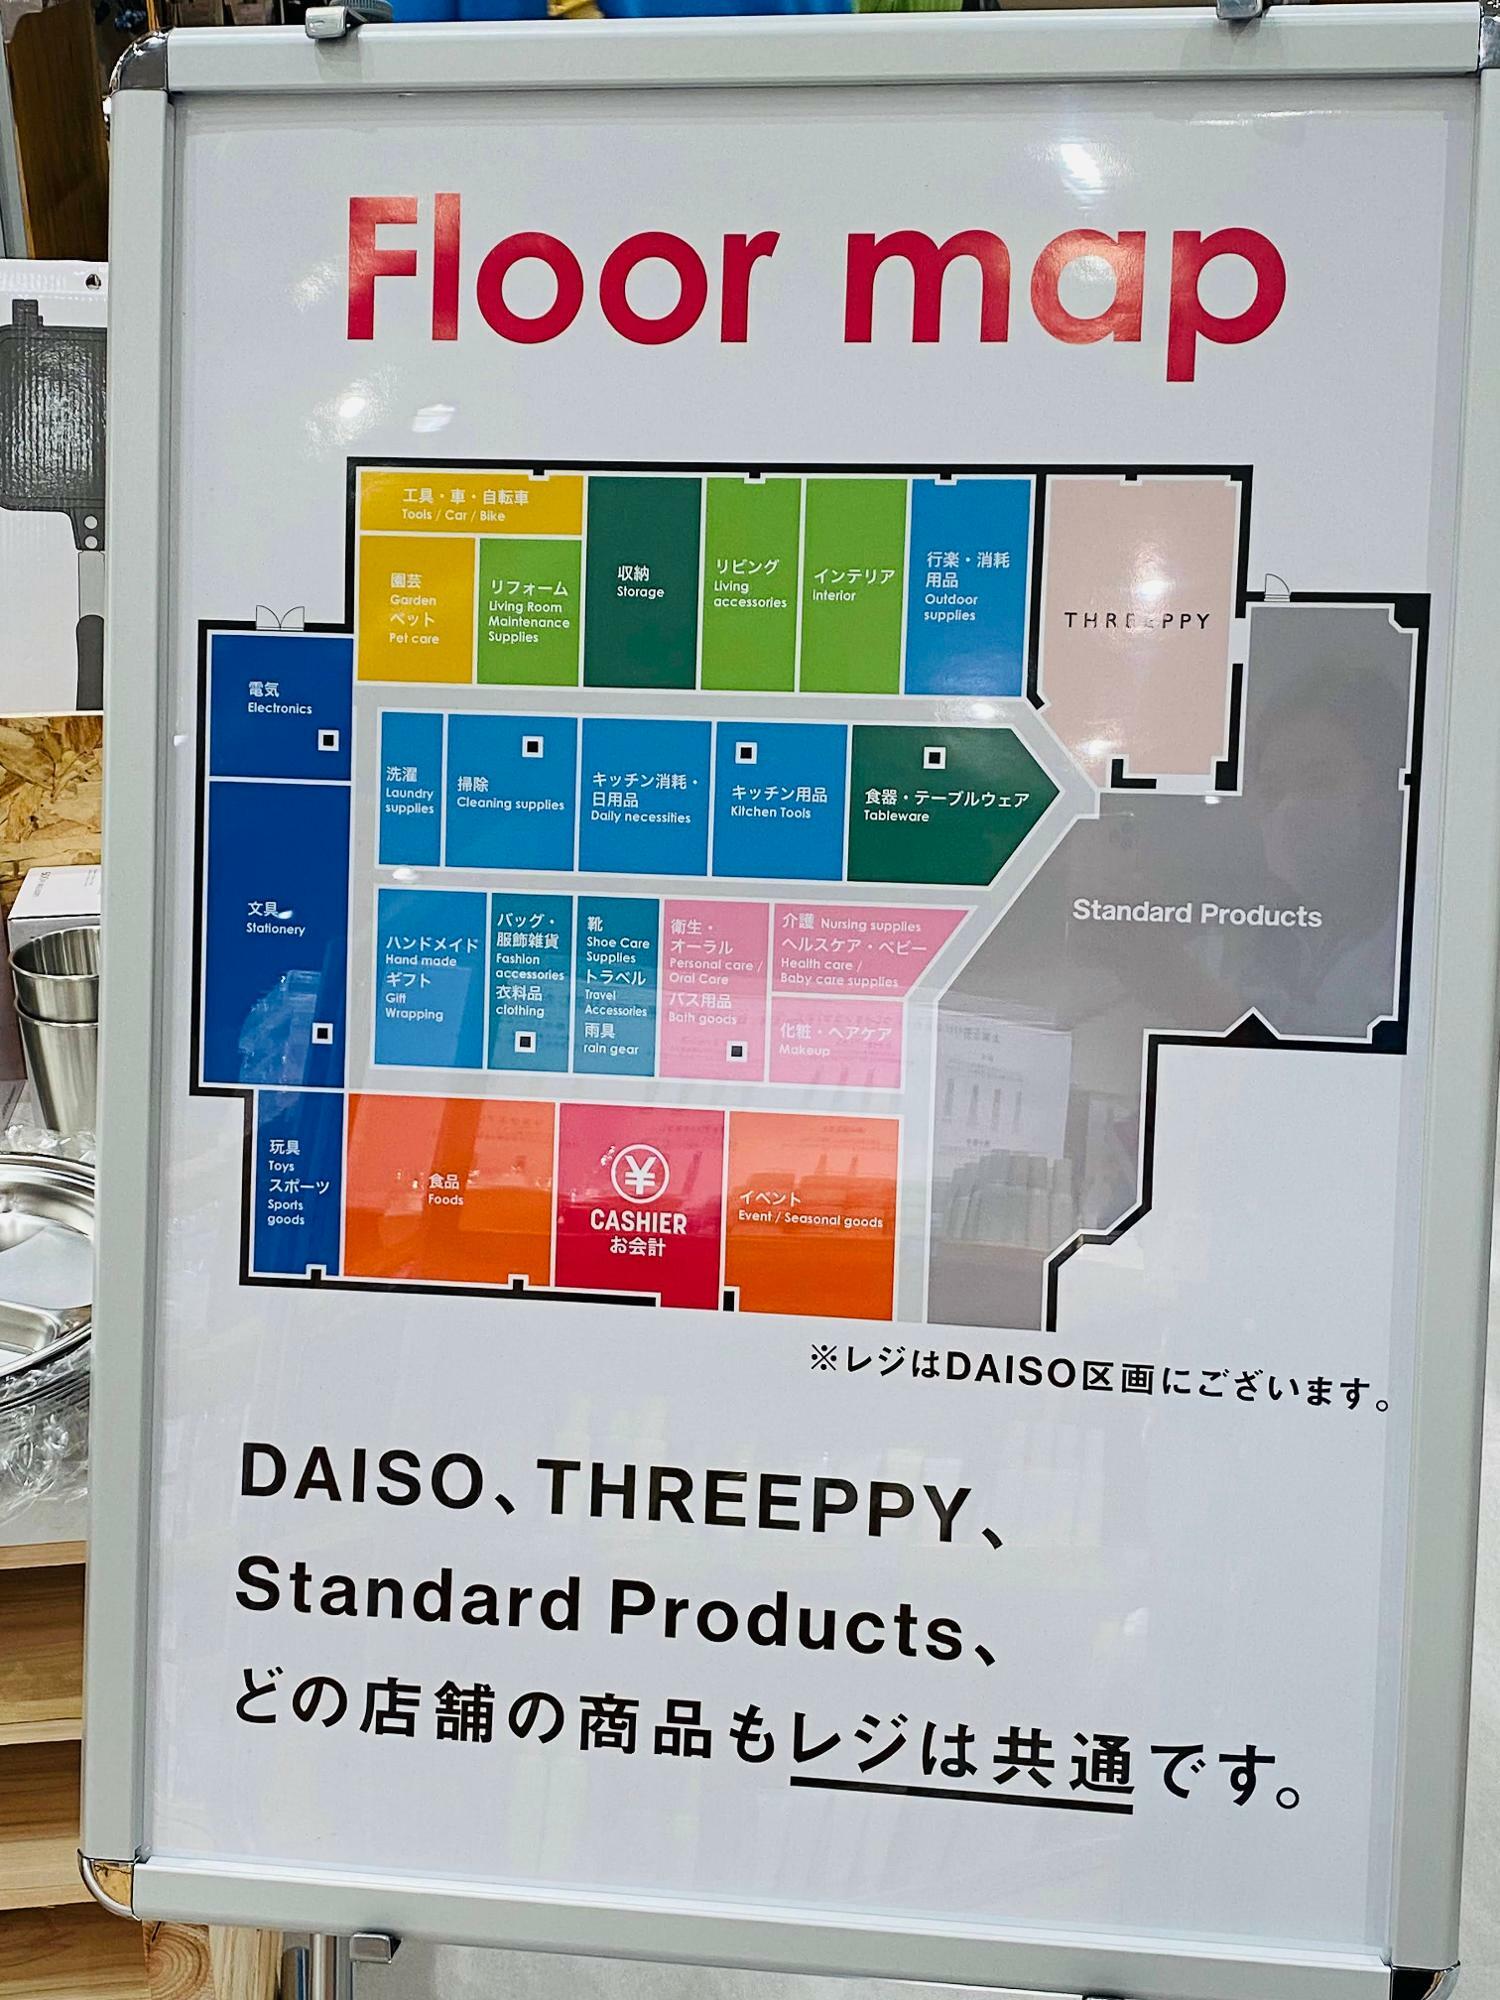 店舗の３分の１は、「Standard Products」と「THREEPPY」が占めています